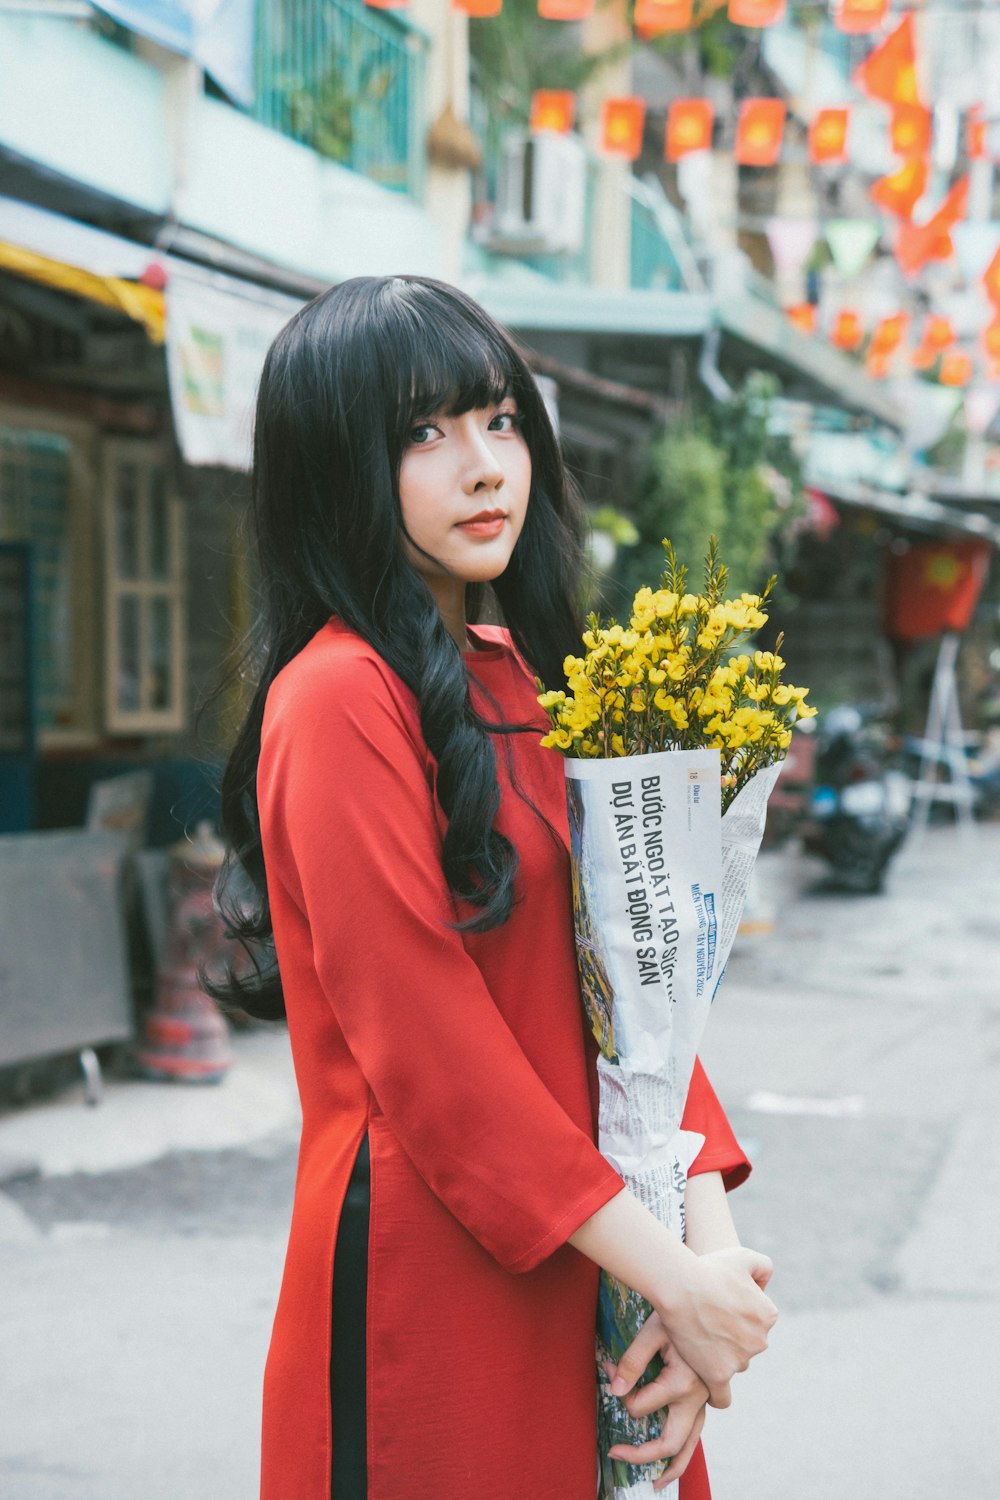 Eine Frau in einem roten Kleid hält einen Blumenstrauß